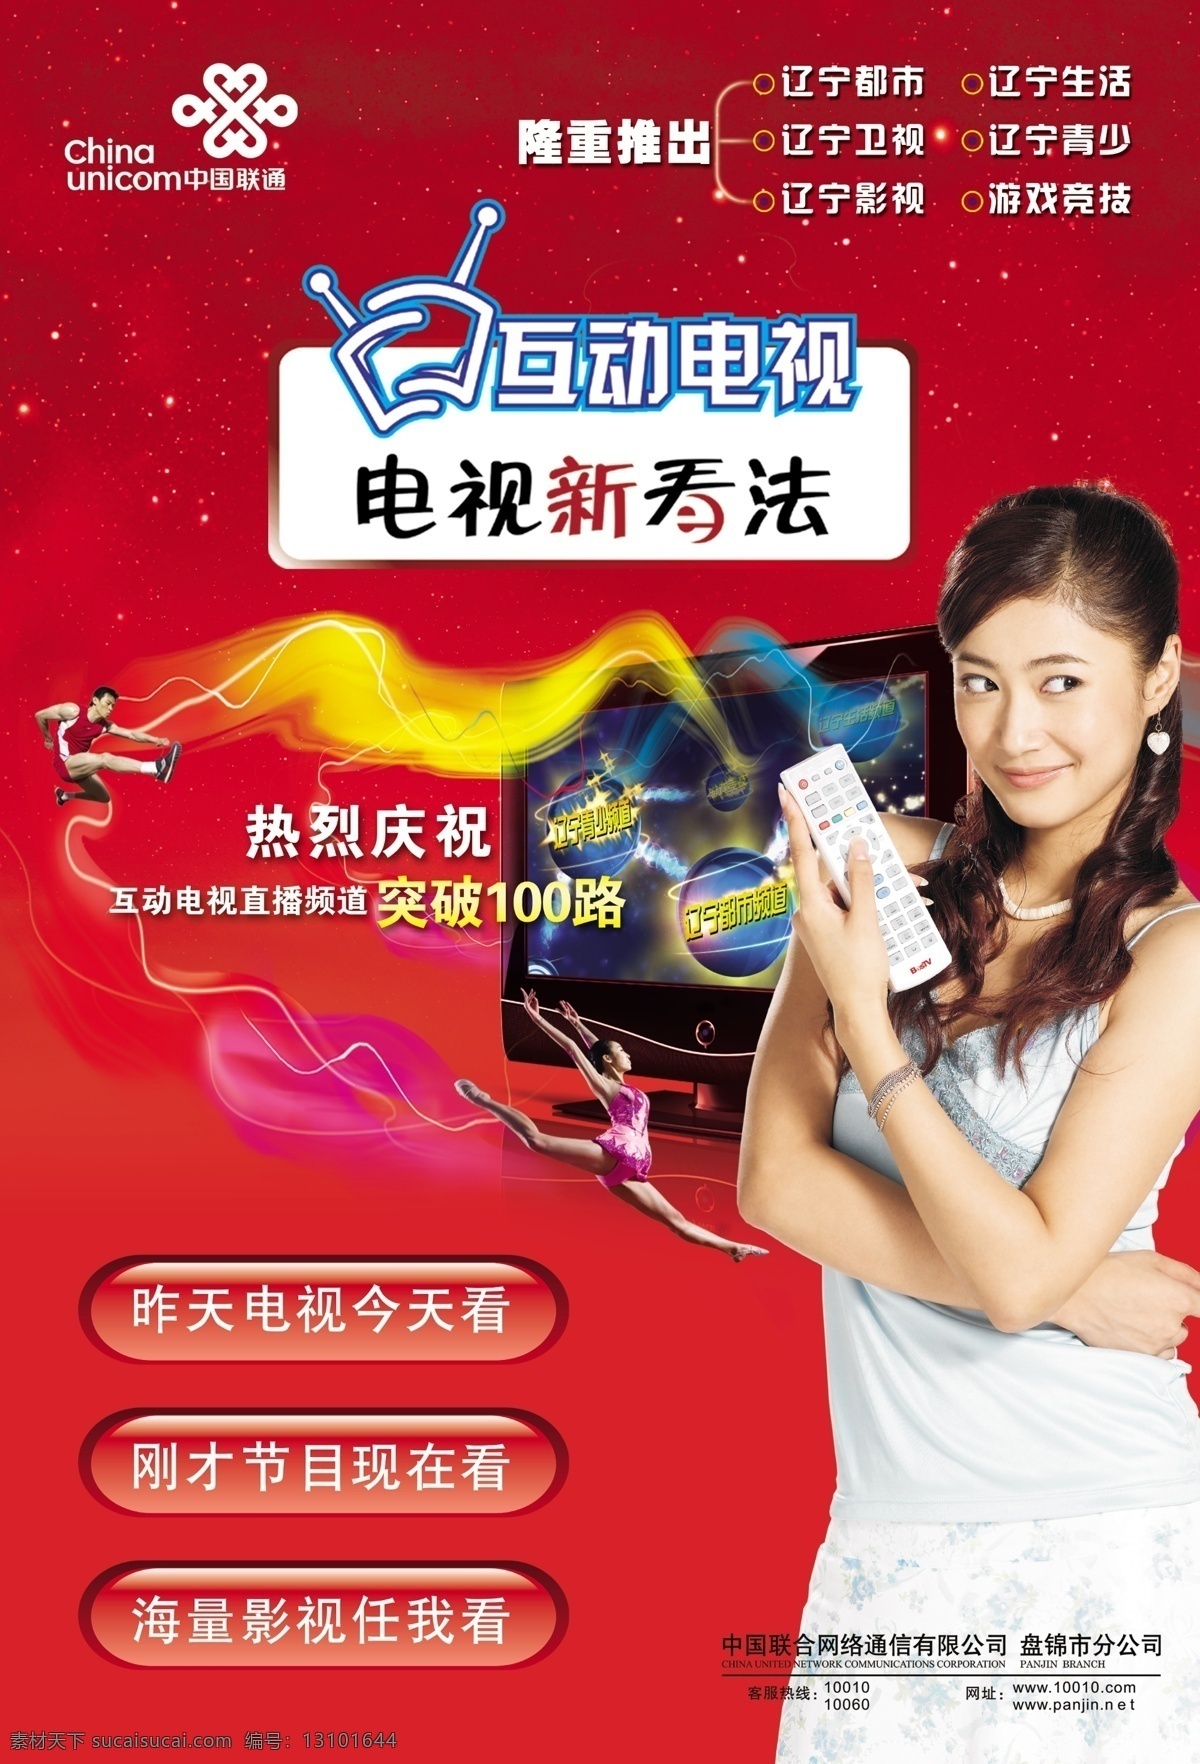 标识 电视 光线 广告设计模板 女人 人物 体操 中国联通 互动 运运员 遥控器 星空 源文件库 其他海报设计